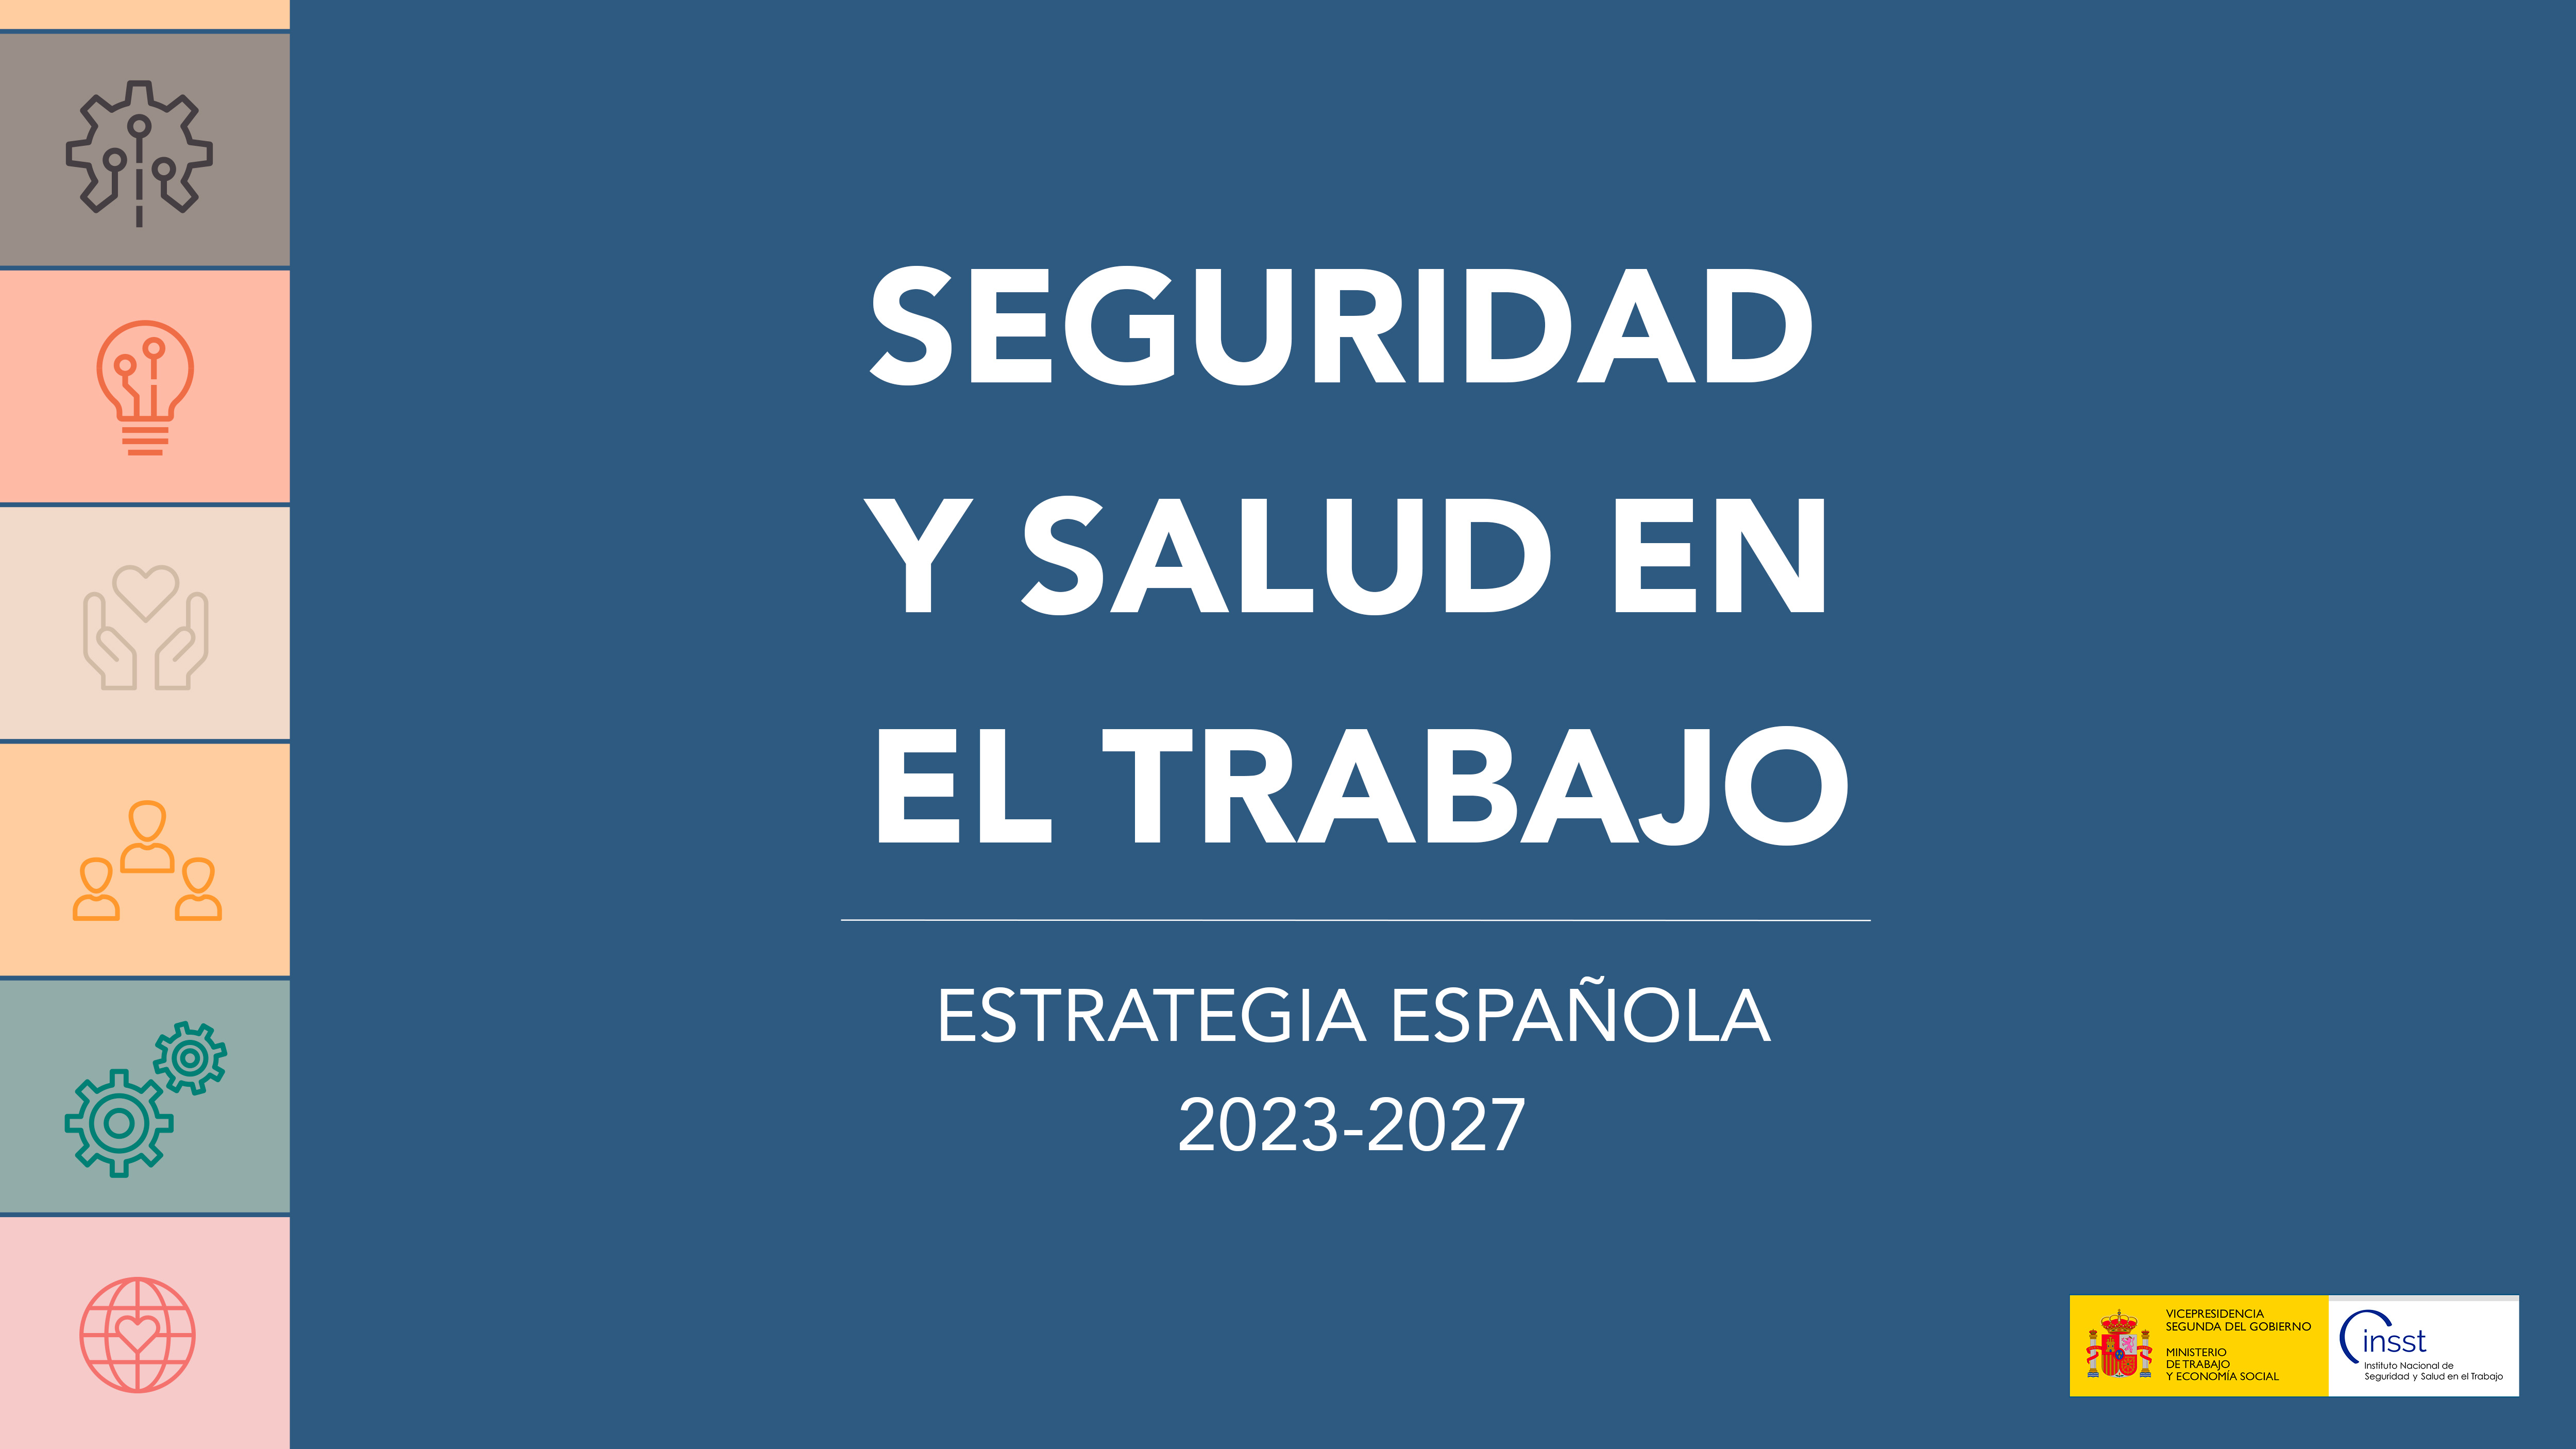 Publicada la Estrategia Española 2023-2027 para la Seguridad y Salud en el Trabajo